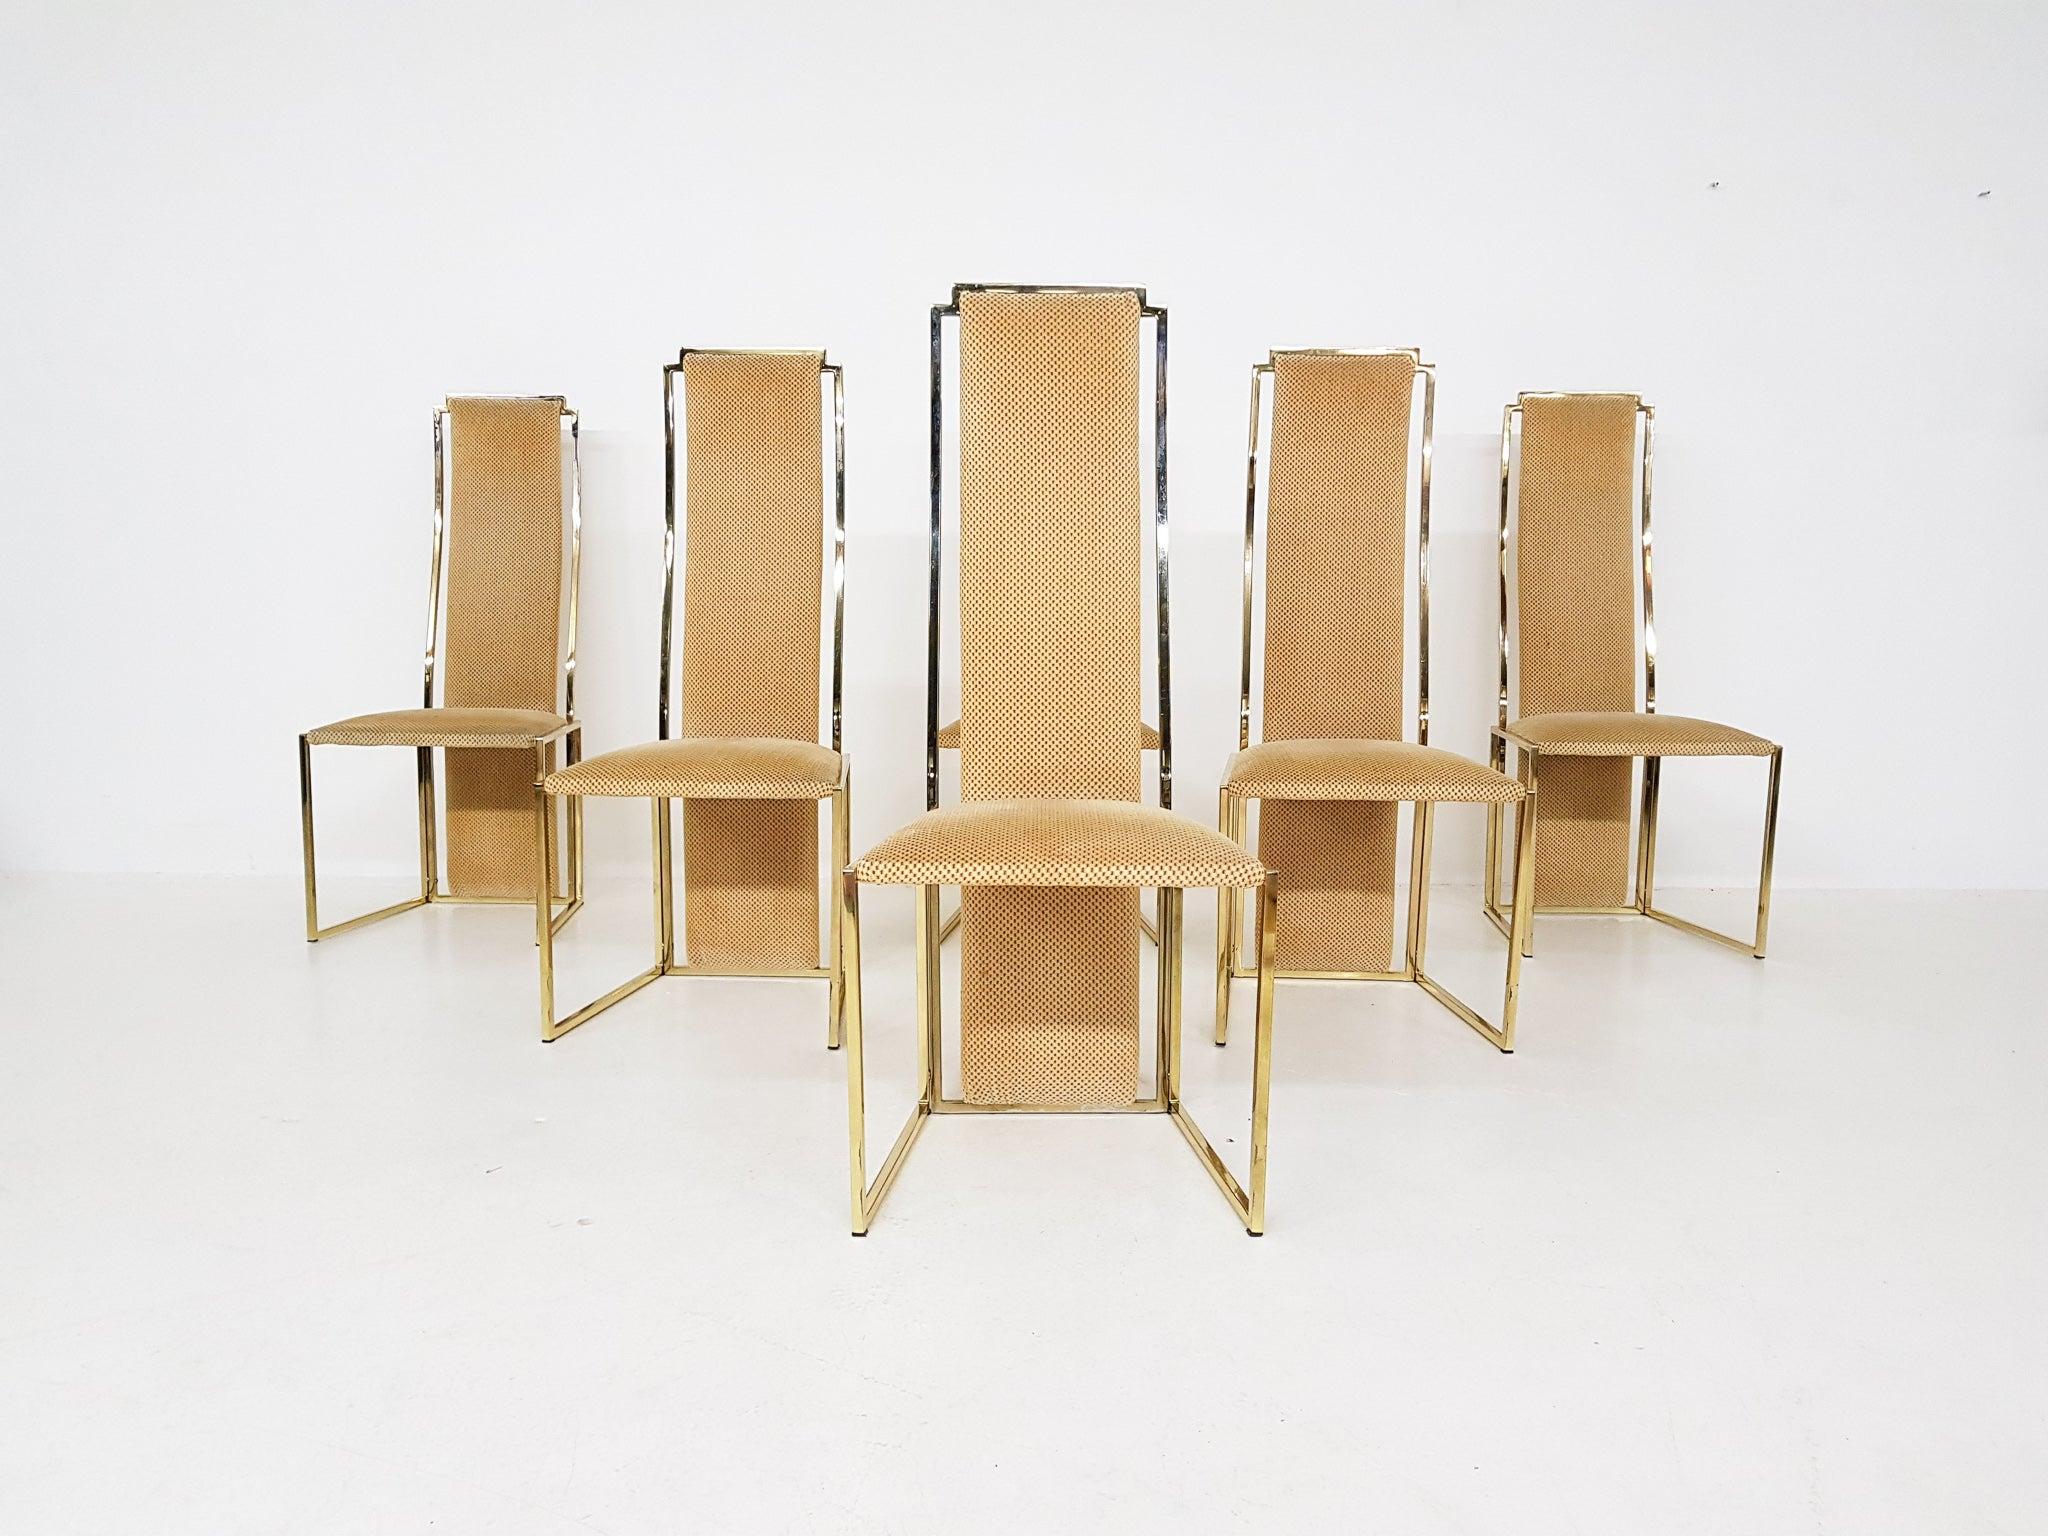 Hochwertige Esszimmerstühle mit hoher Rückenlehne aus vergoldetem Metall von Alain Delon. Hergestellt und entworfen in Frankreich in den 1980er Jahren.

Ein Satz von sechs Esszimmerstühlen aus vergoldetem Metall und Stoff. Die Stühle haben